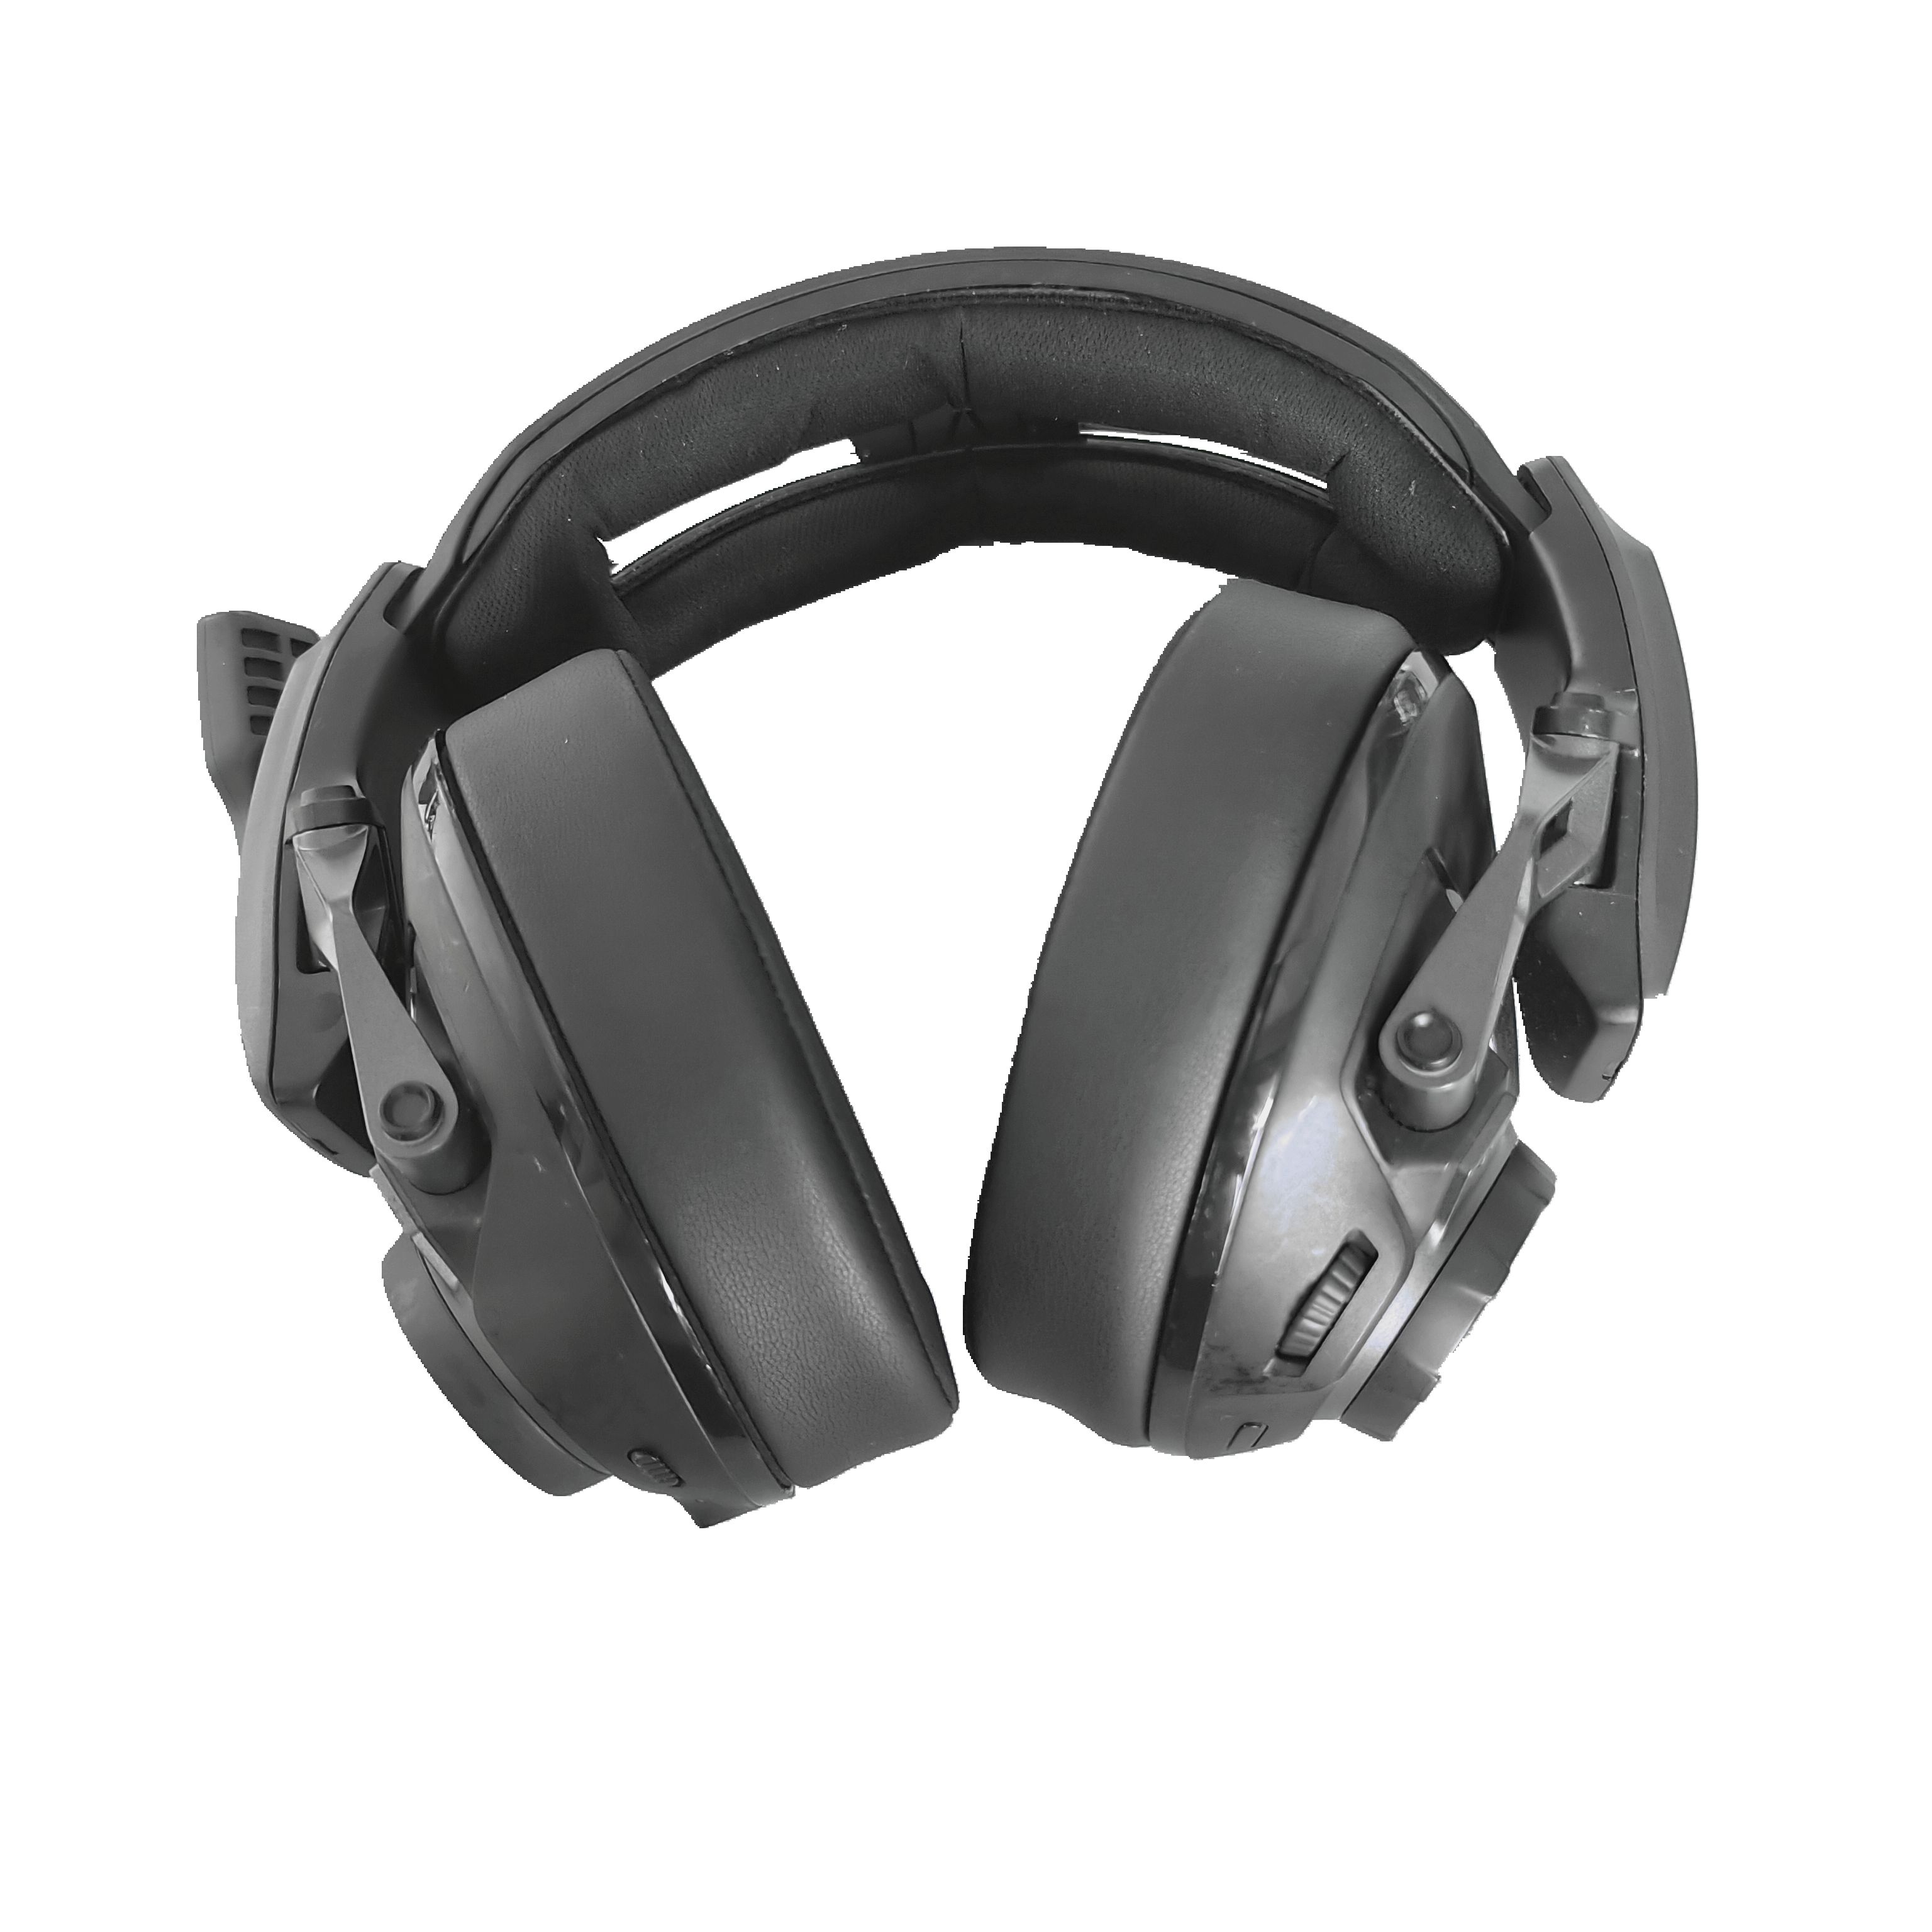 SENNHEISER/森海塞尔 GSP 670 头戴式无线蓝牙2.4G三模游戏耳机 影音电器 游戏电竞头戴耳机 原图主图